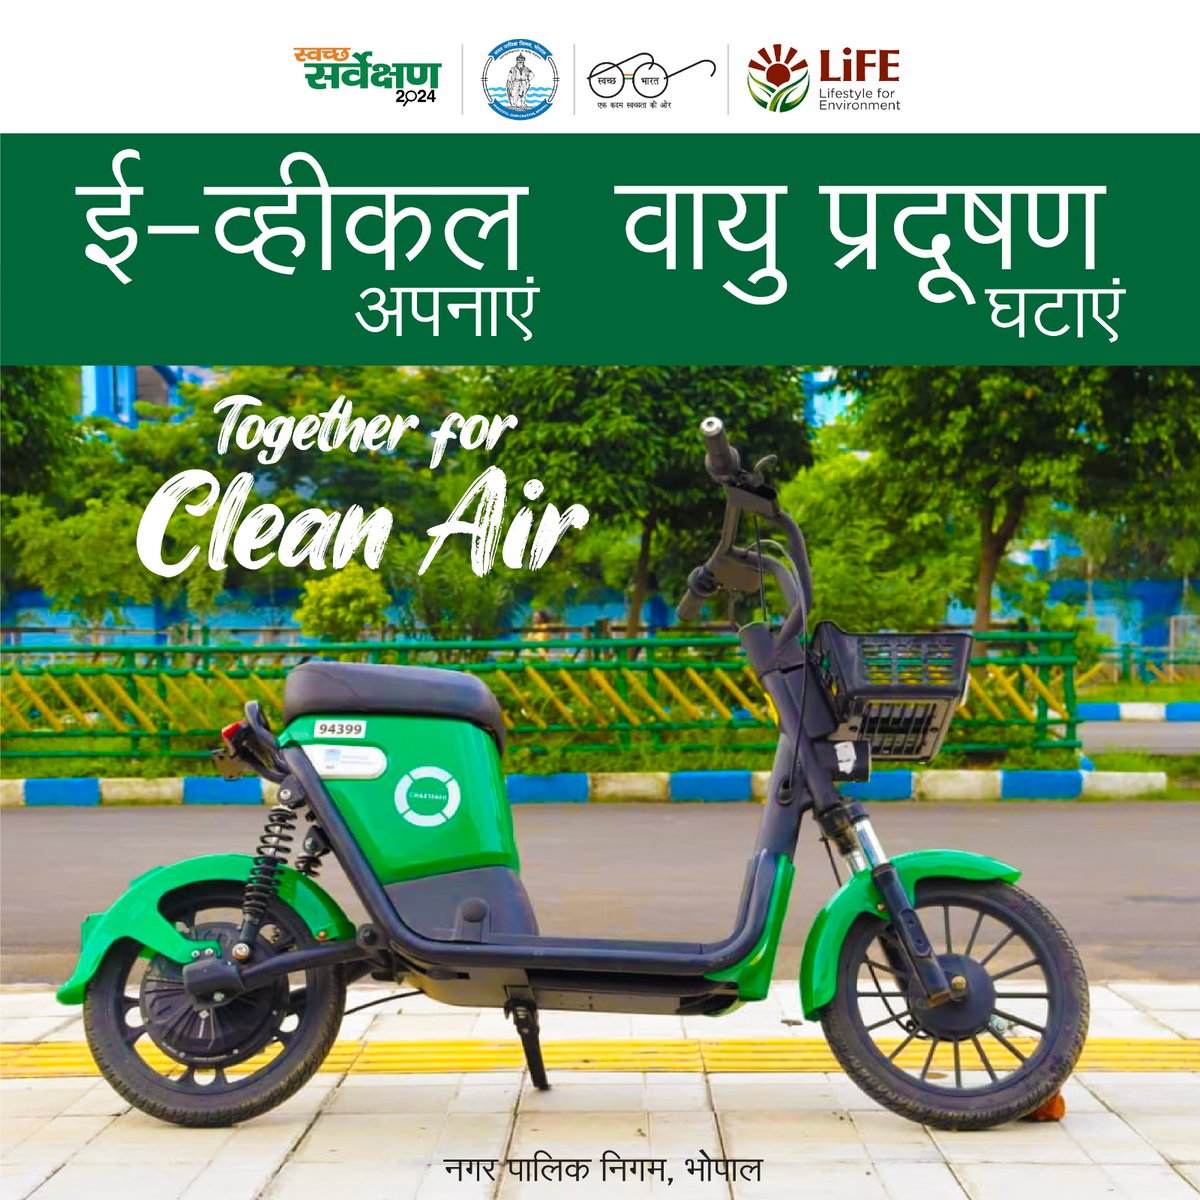 वाहन से धुआँ न उड़ाएं... 

ई-व्हीकल अपनाएं, वायु प्रदूषण घटाएं।
Together For Clean Air

(नगर पालिक निगम, भोपाल #ULBCode802312)
#BMCNews
#AirQualityIndex
#SwachhSurvekshan2024Bhopal
#SwachhBhopal
#SUPFreeBhopal